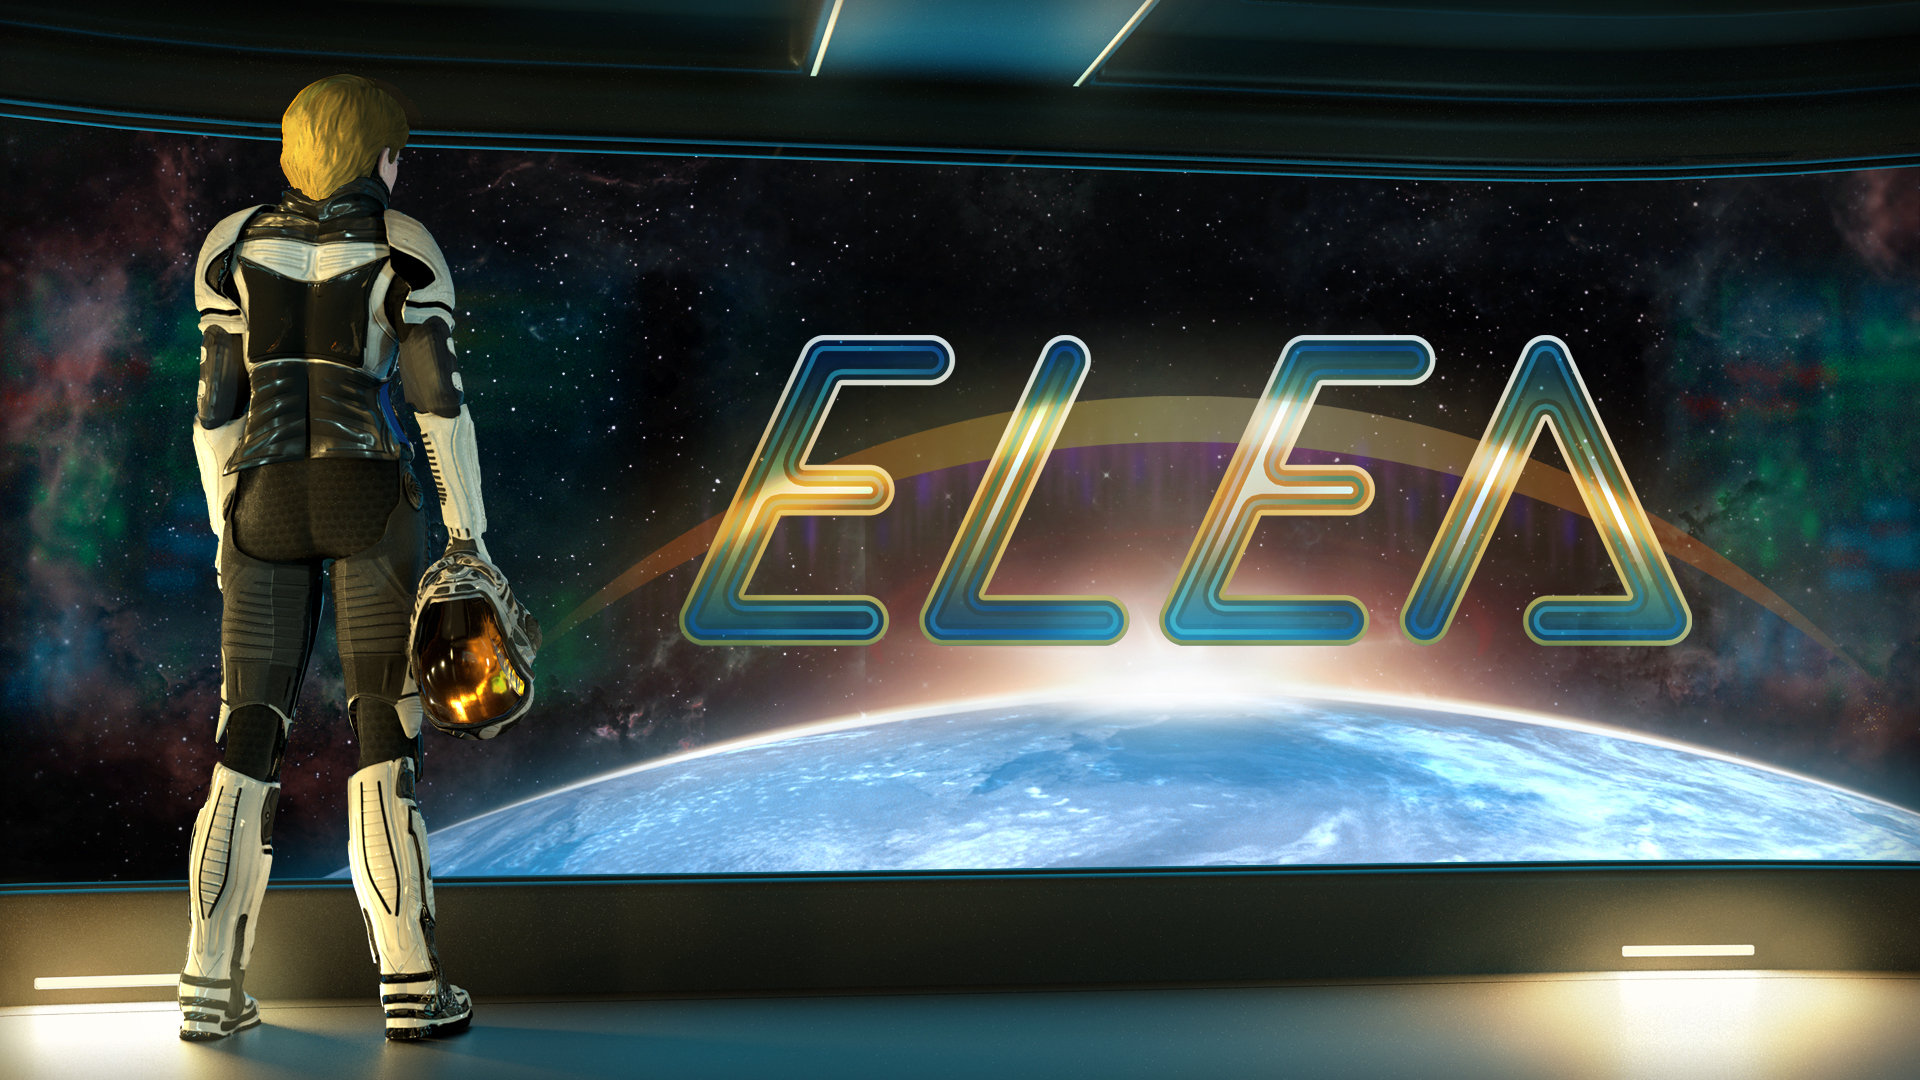 El primer episodio de Elea ya está disponible en Xbox One y Steam